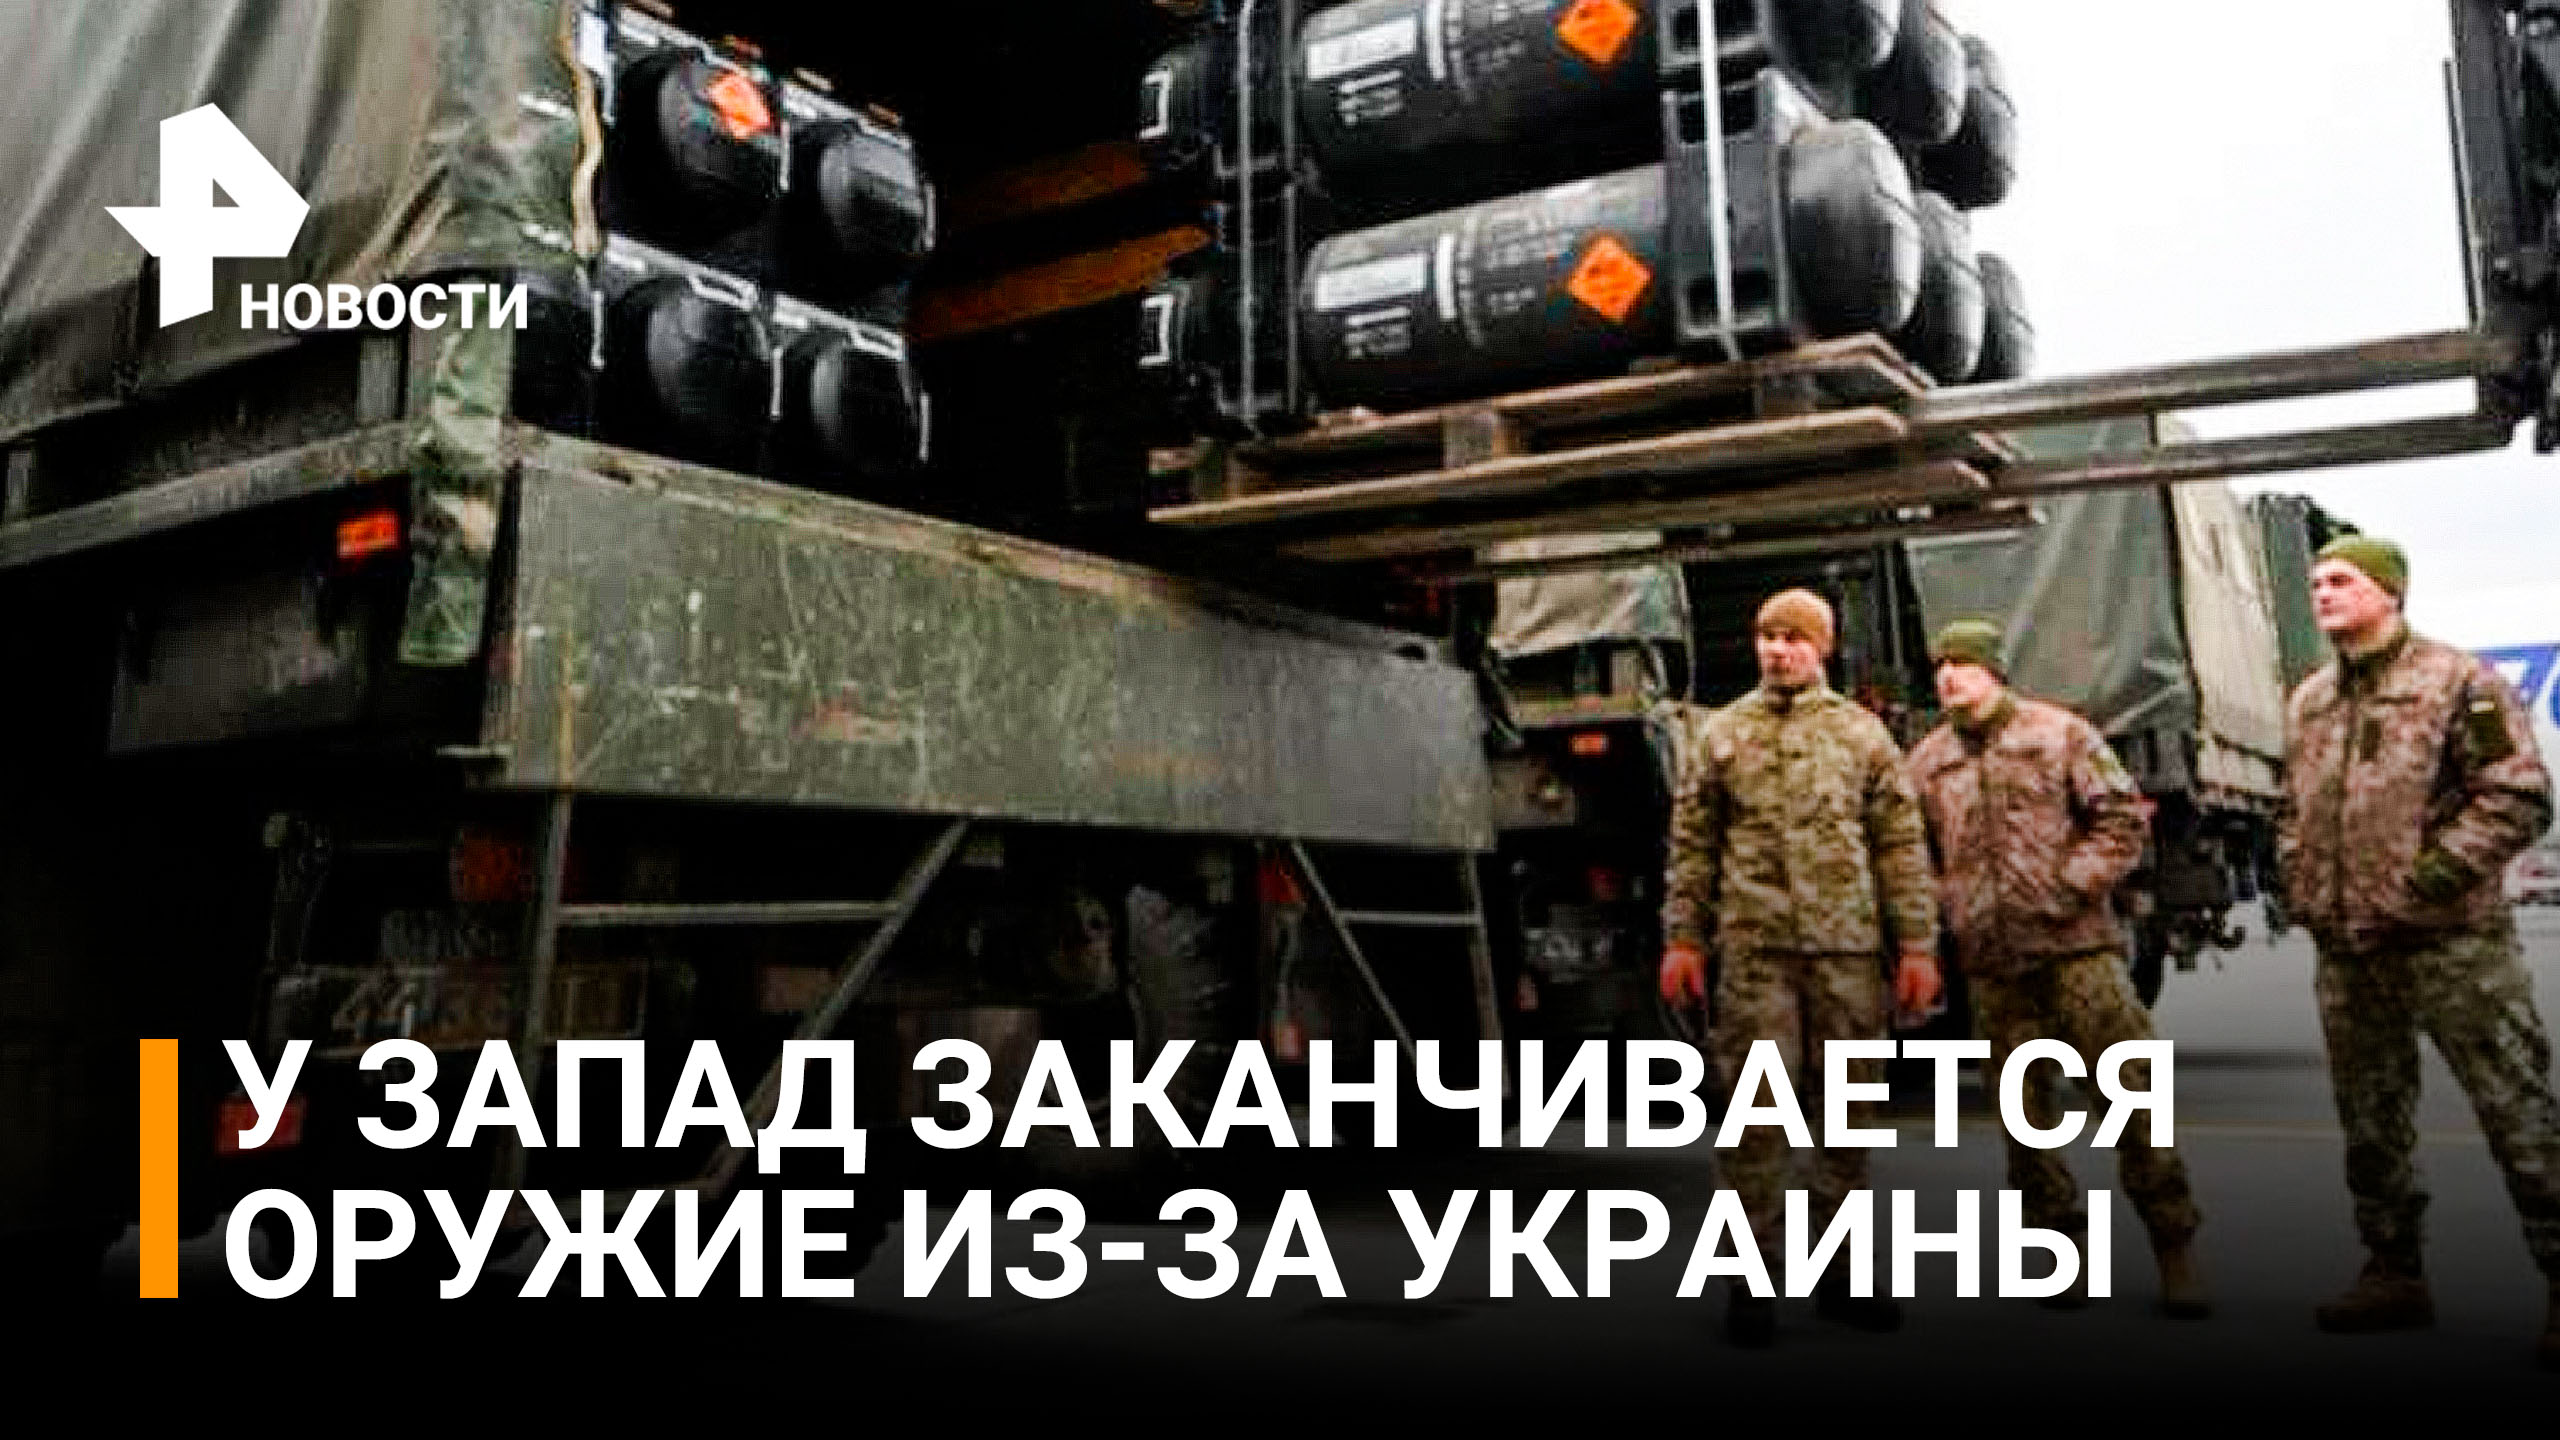 У стран Запада заканчивается оружие, но запросы Украины растут / РЕН Новости